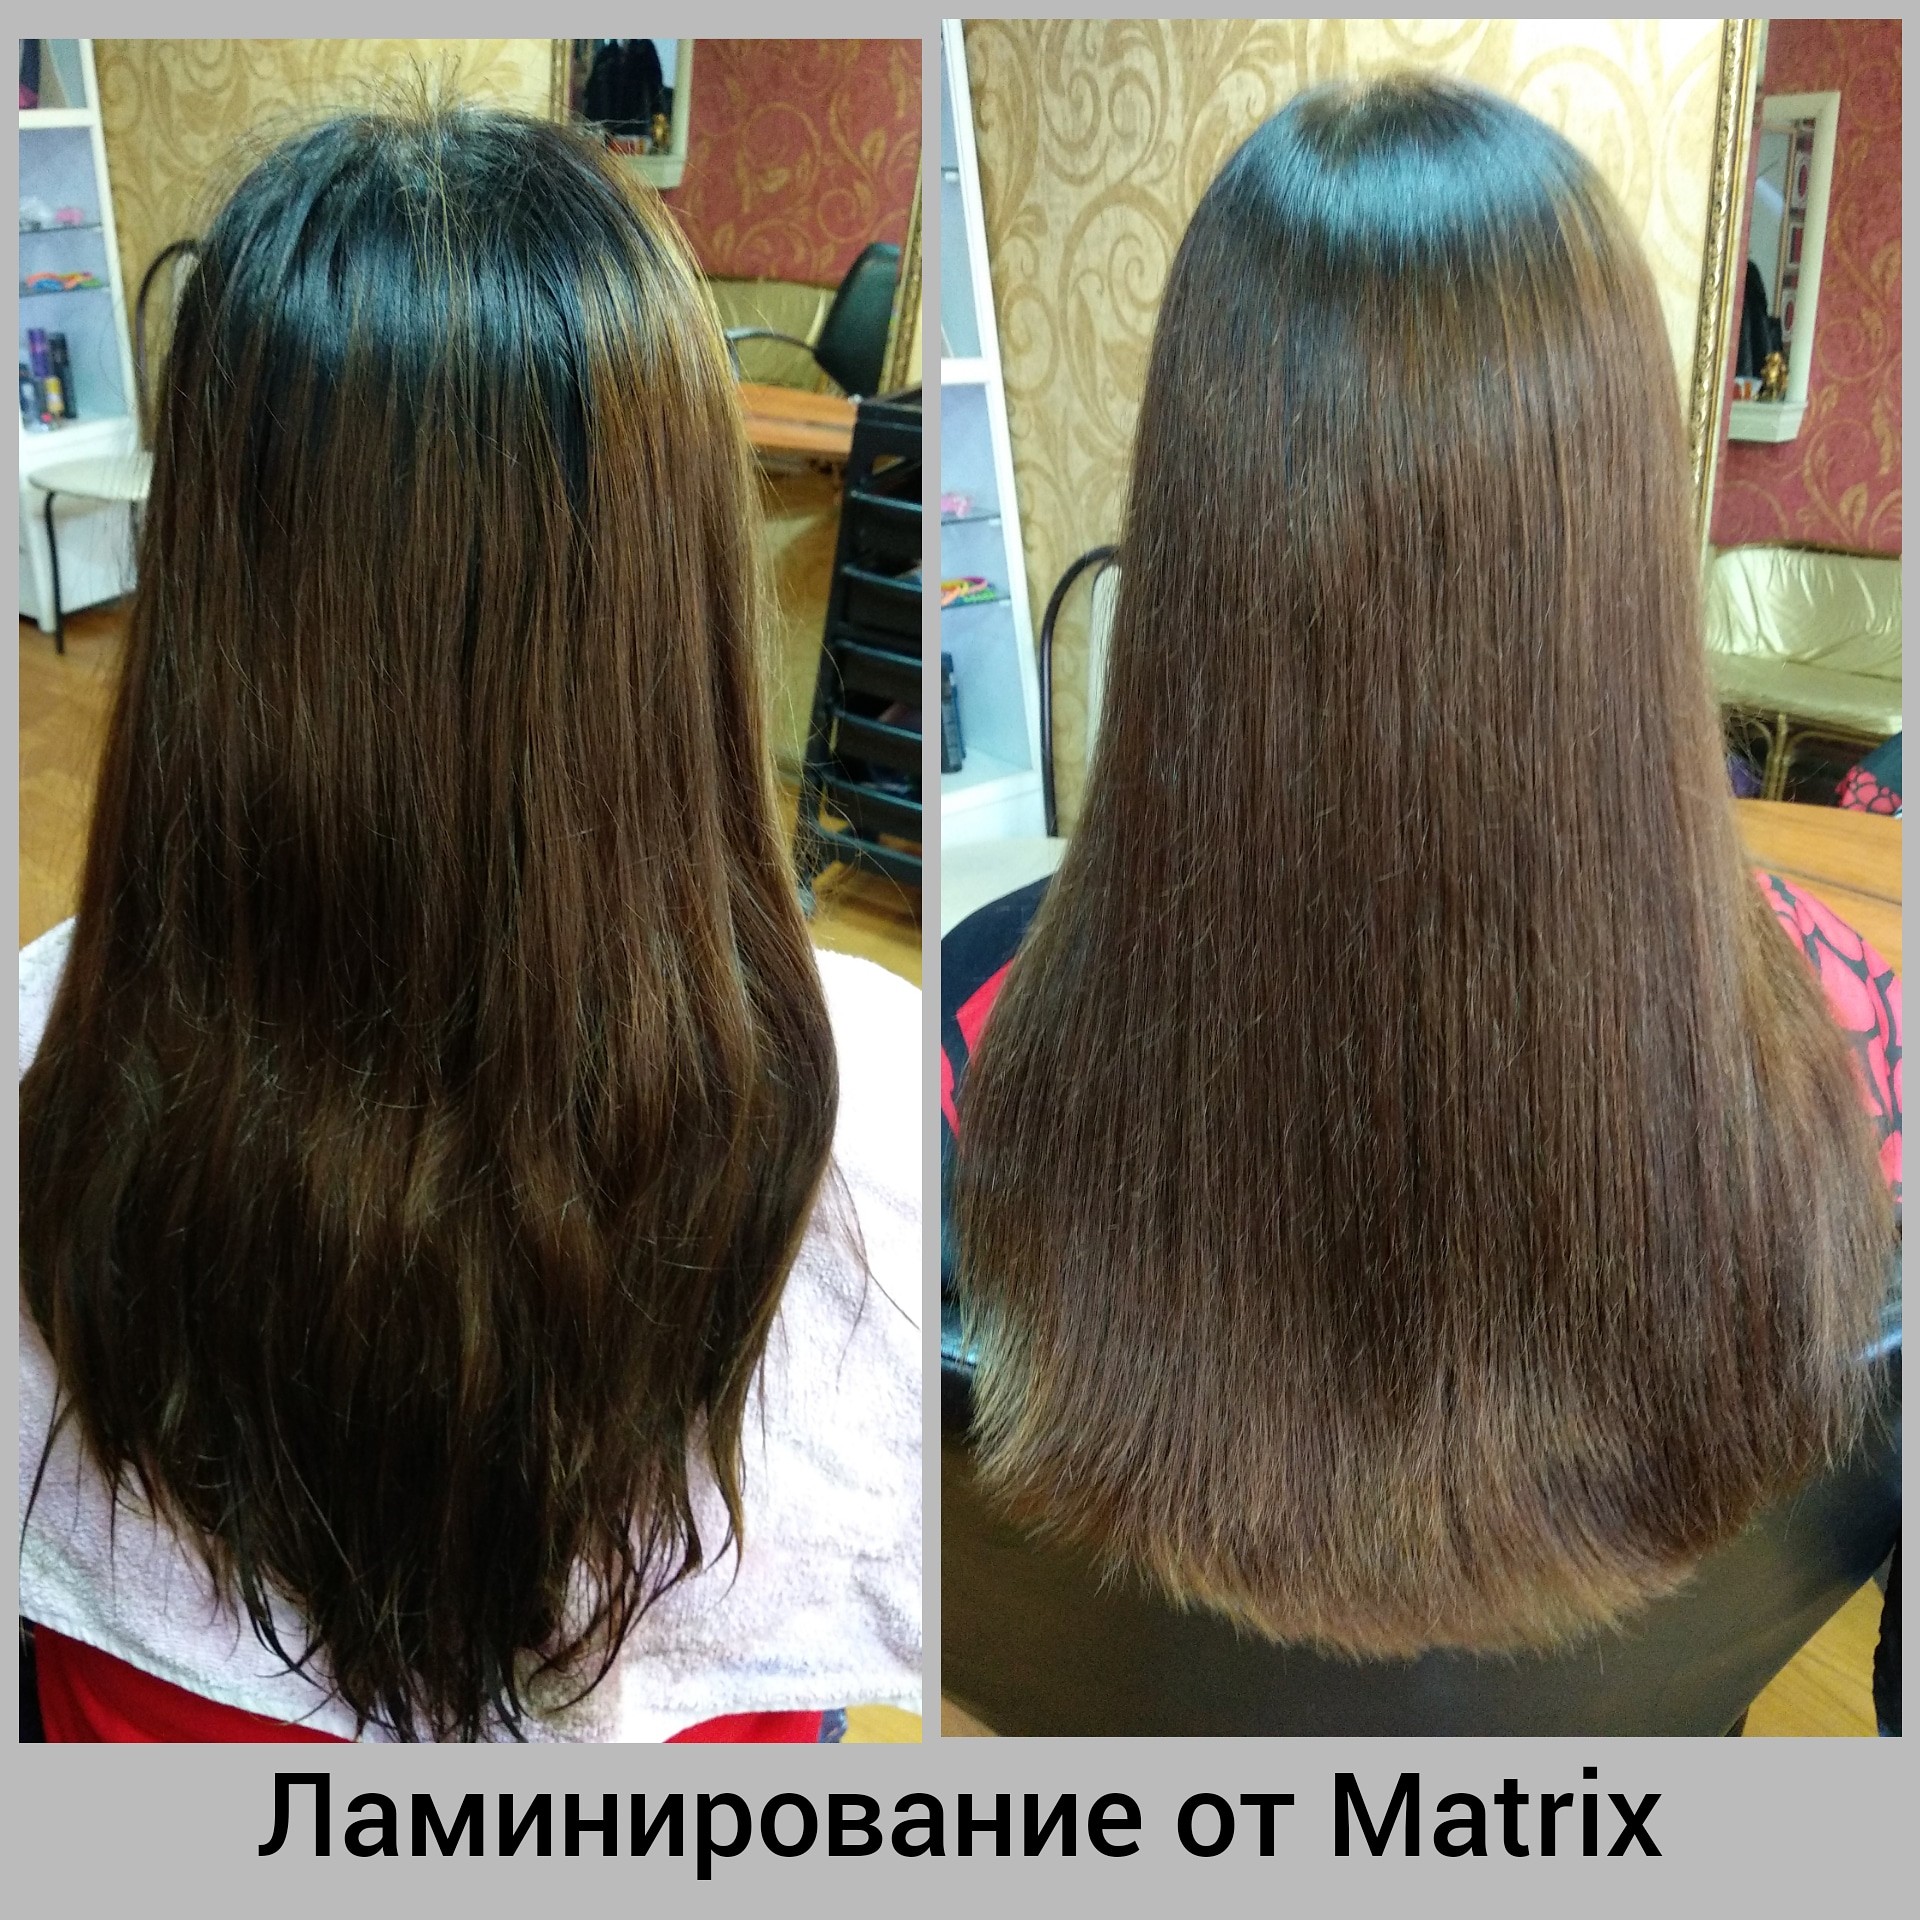 Как делают ламинирование волос с матрикса